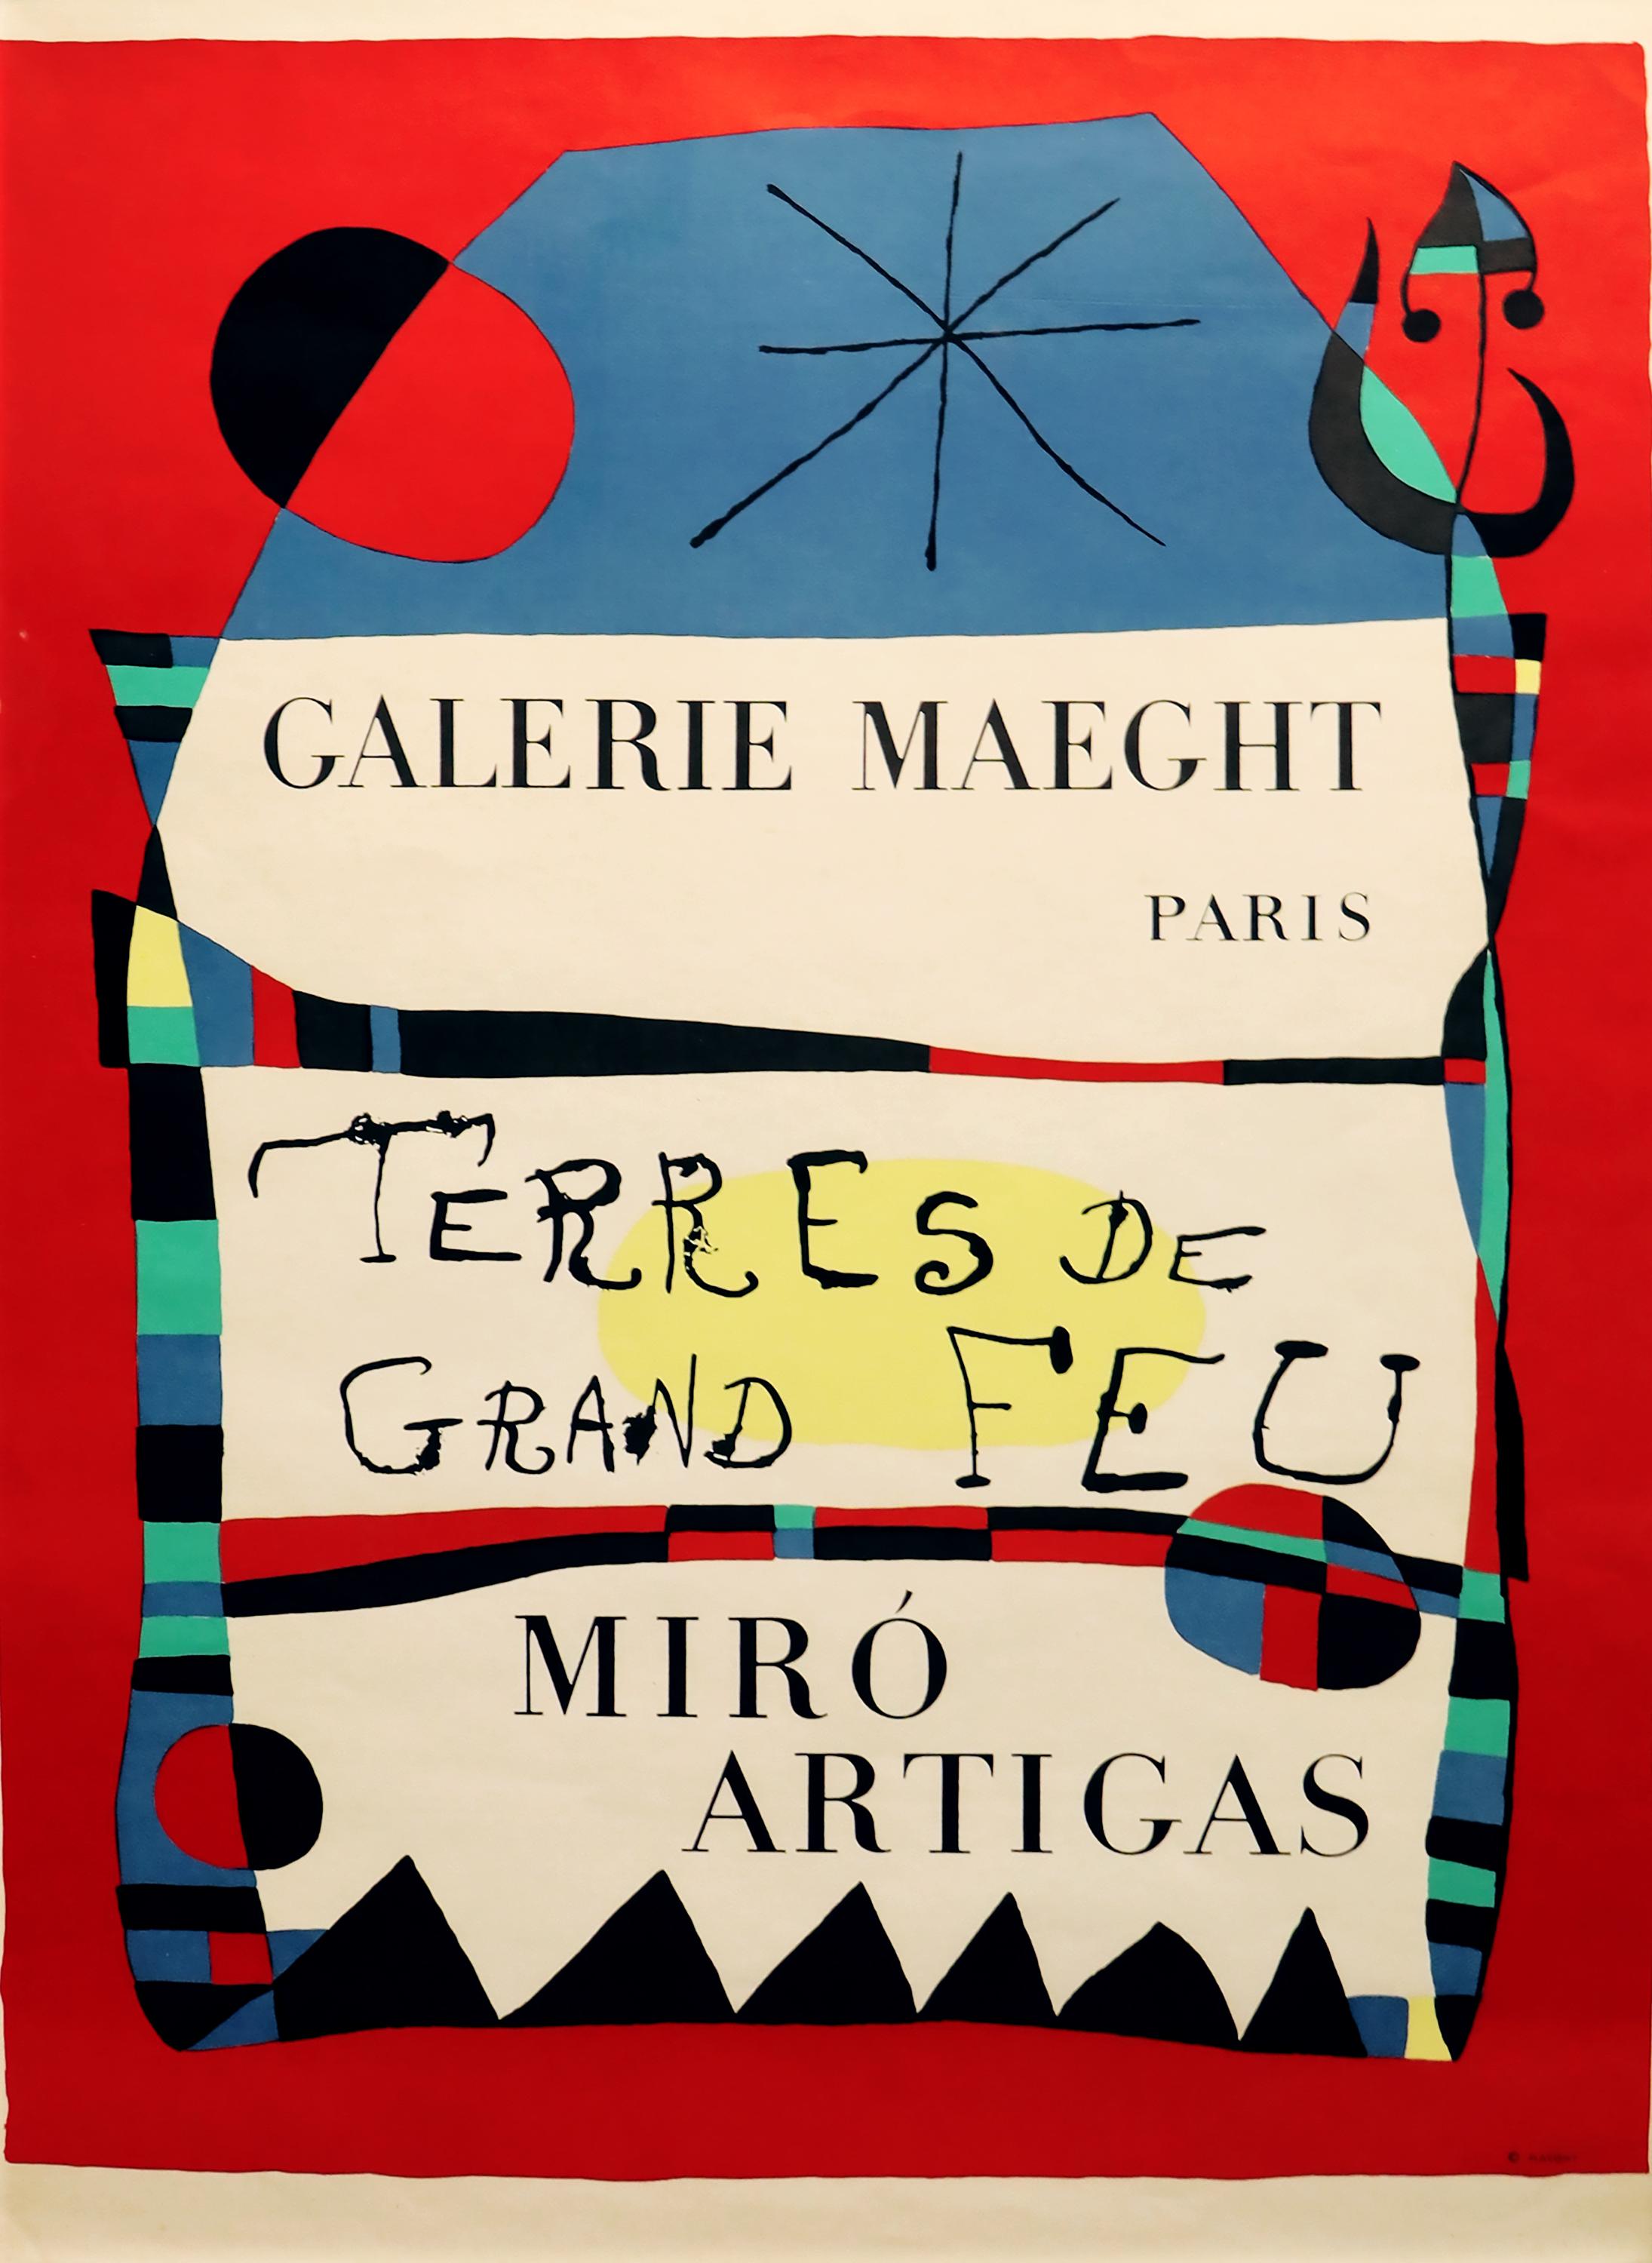 Abstract Print (after) Joan Miró - Tere de Grand Feu